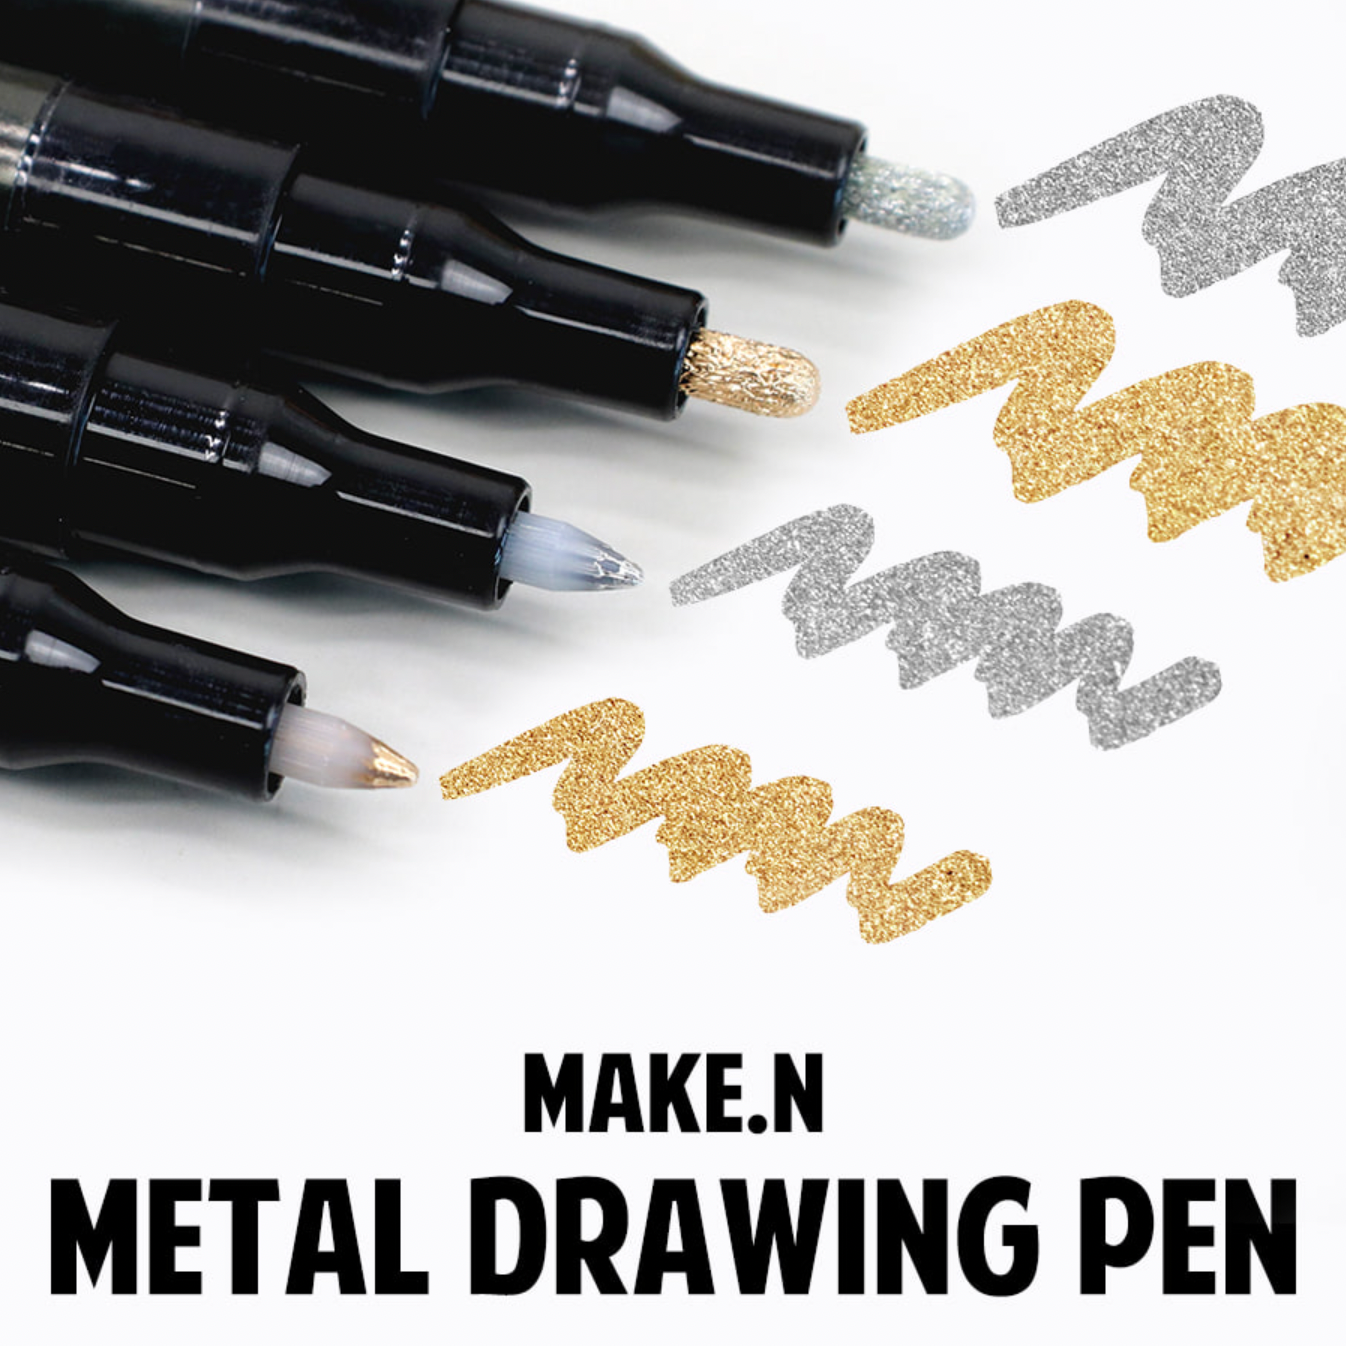 MAKE.N Metal drawing pen - 4 types